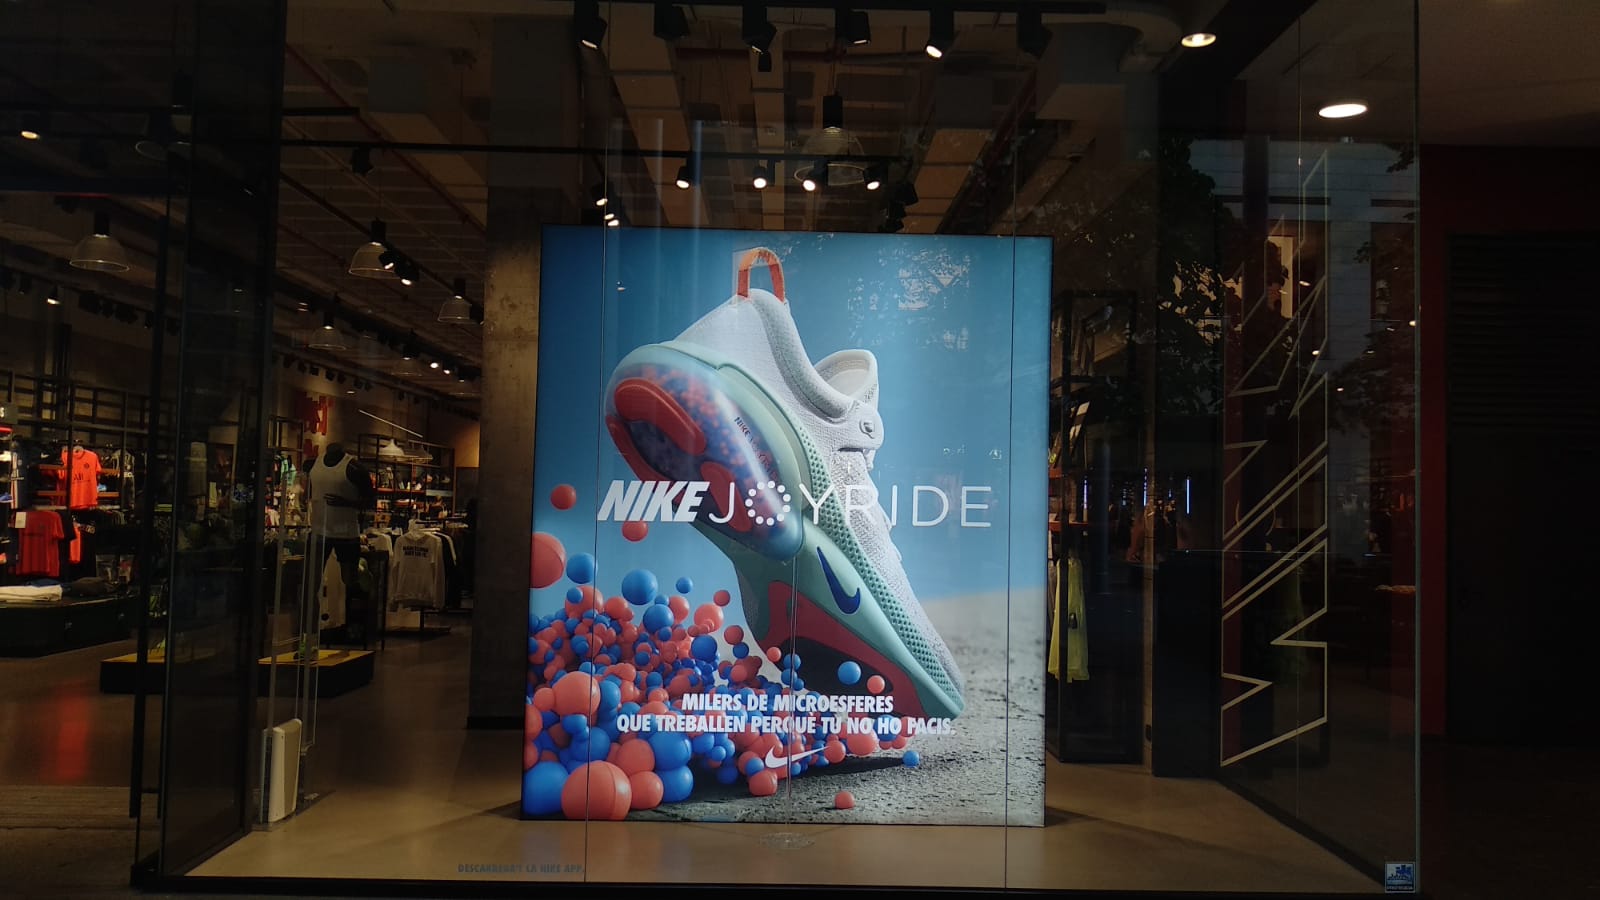 Nike Store Barcelona - La Maquinista - Deportes Y Ocio: Artículos Y Ropas (Al Por Y Accesorios) en Barcelona (dirección, horarios, opiniones, 932208...) - Infobel